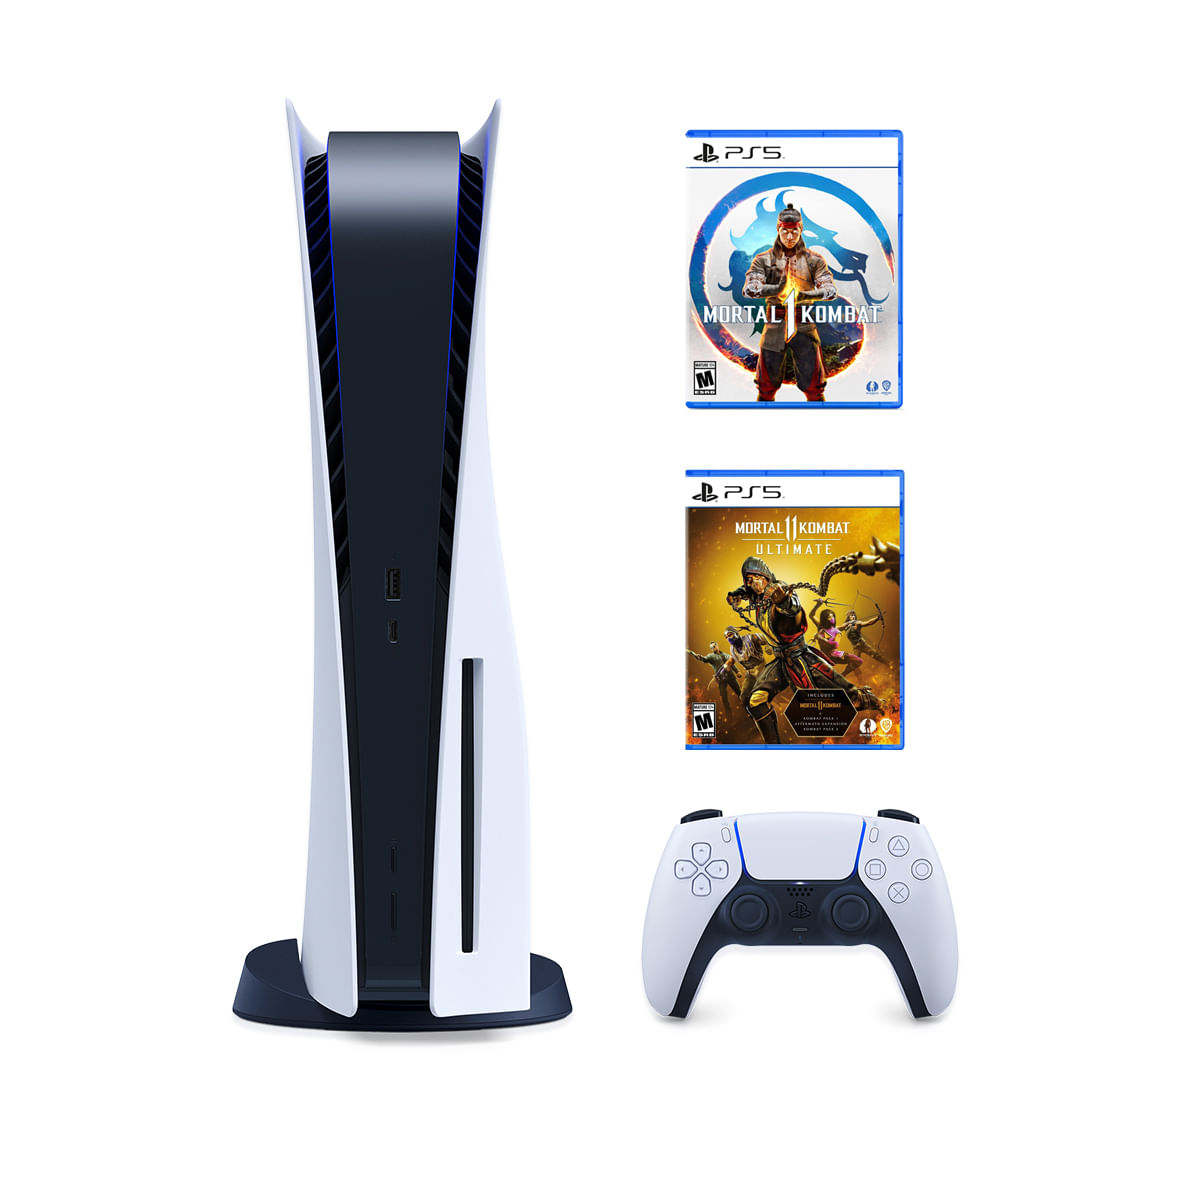 Consola PS5 Lector de Discos + Mortal Kombat 1 + Mortal Kombat 11 Ultimate